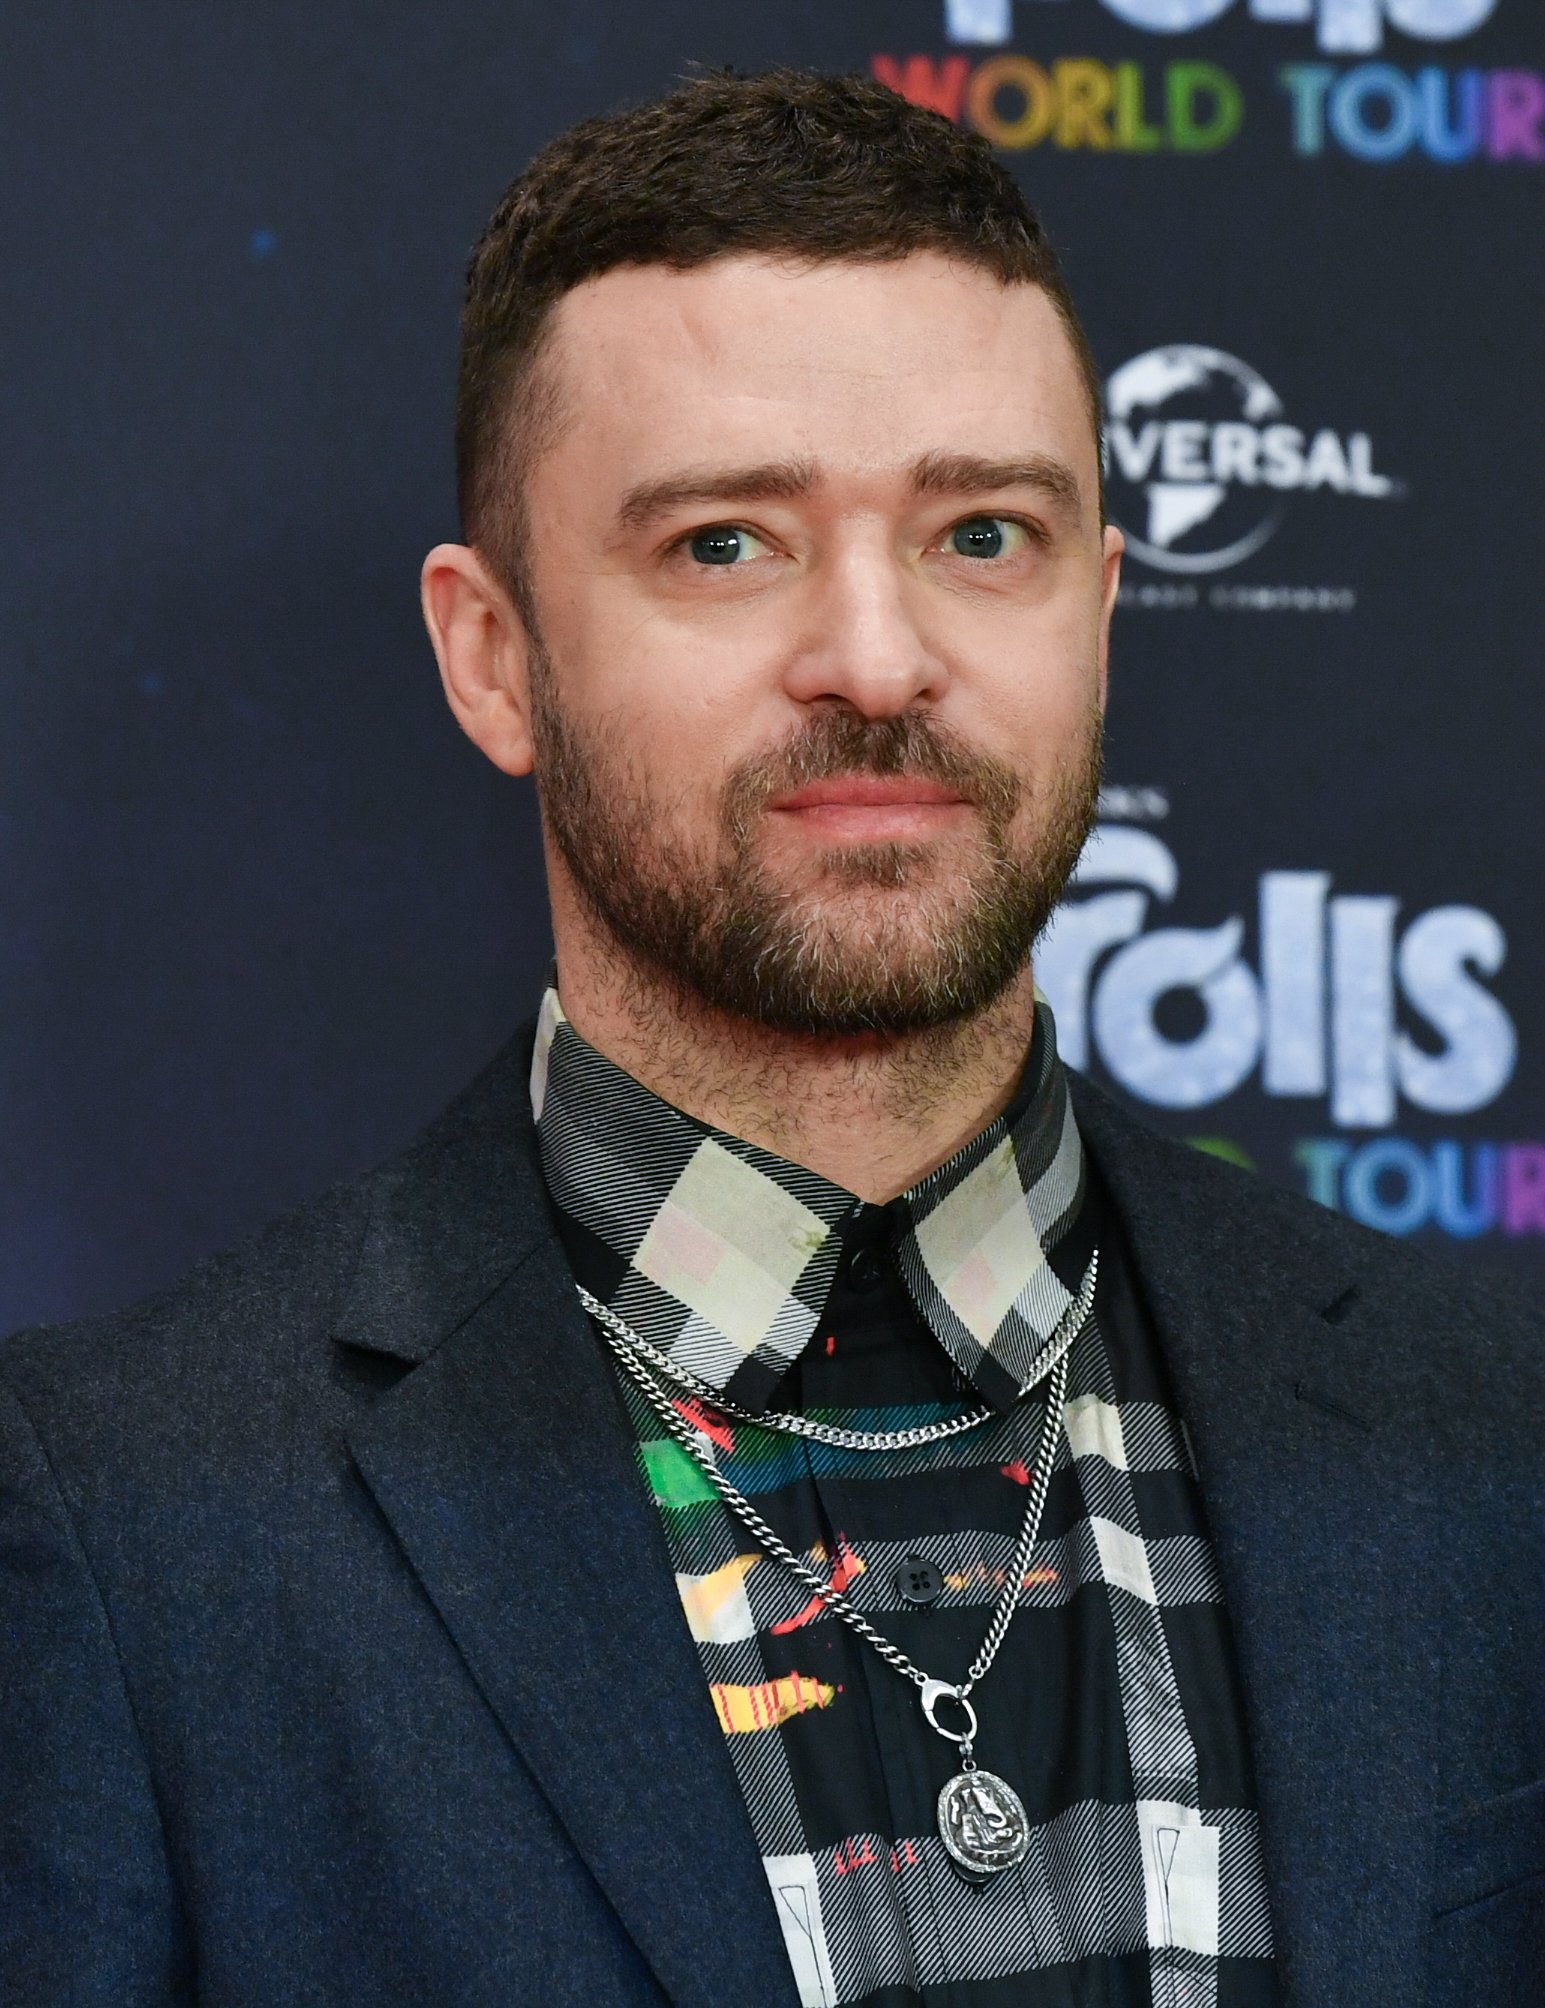 Justin Timberlake beim Posieren im Waldorf Historia für den Film "Trolls World Tour" am 17. Februar 2020, Berlin. | Quelle: Getty Images